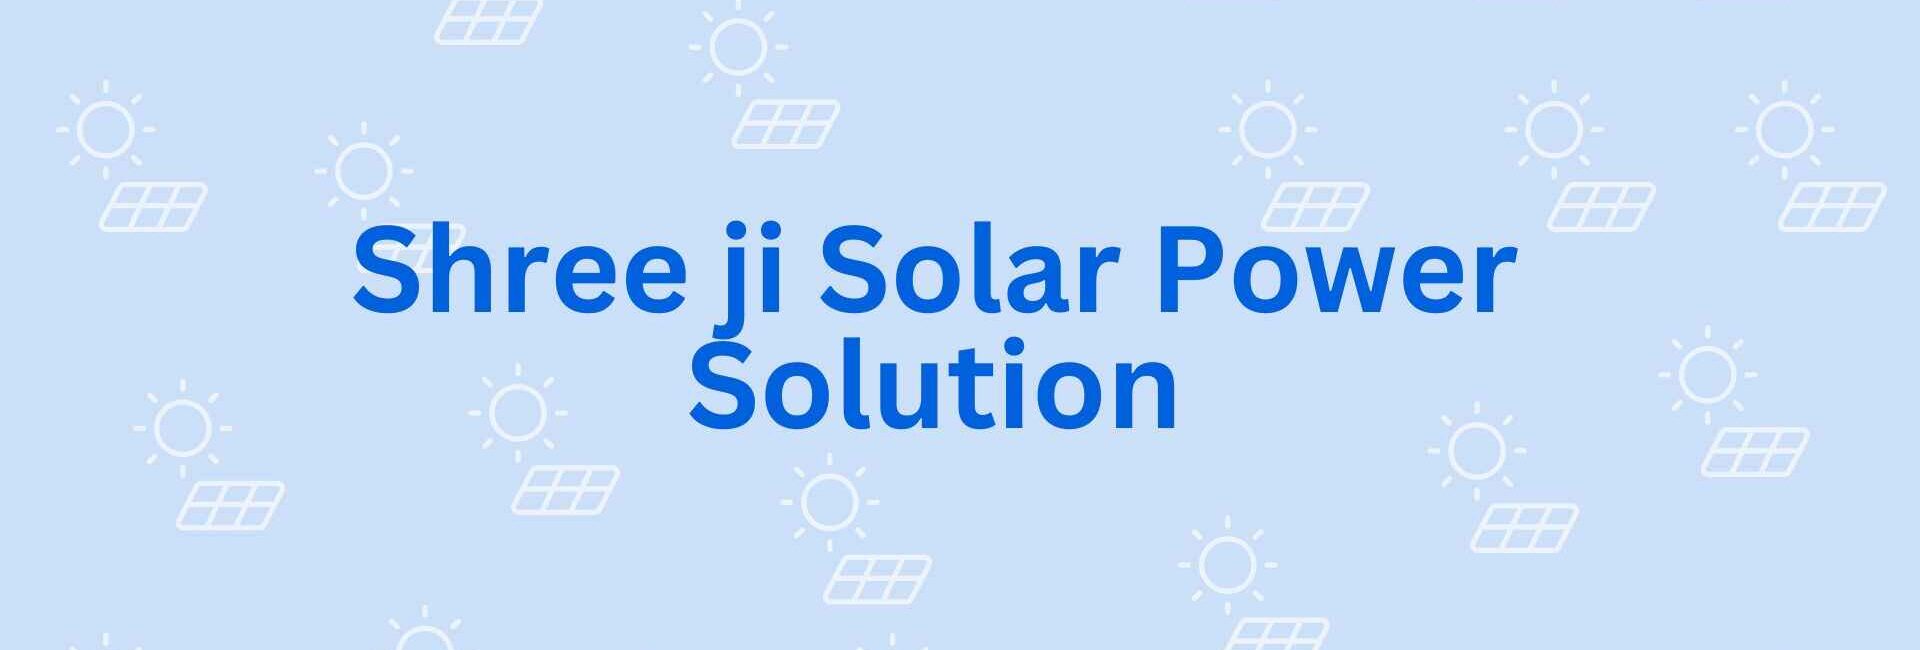 Shree ji Solar Power Solution - Solar system in Noida